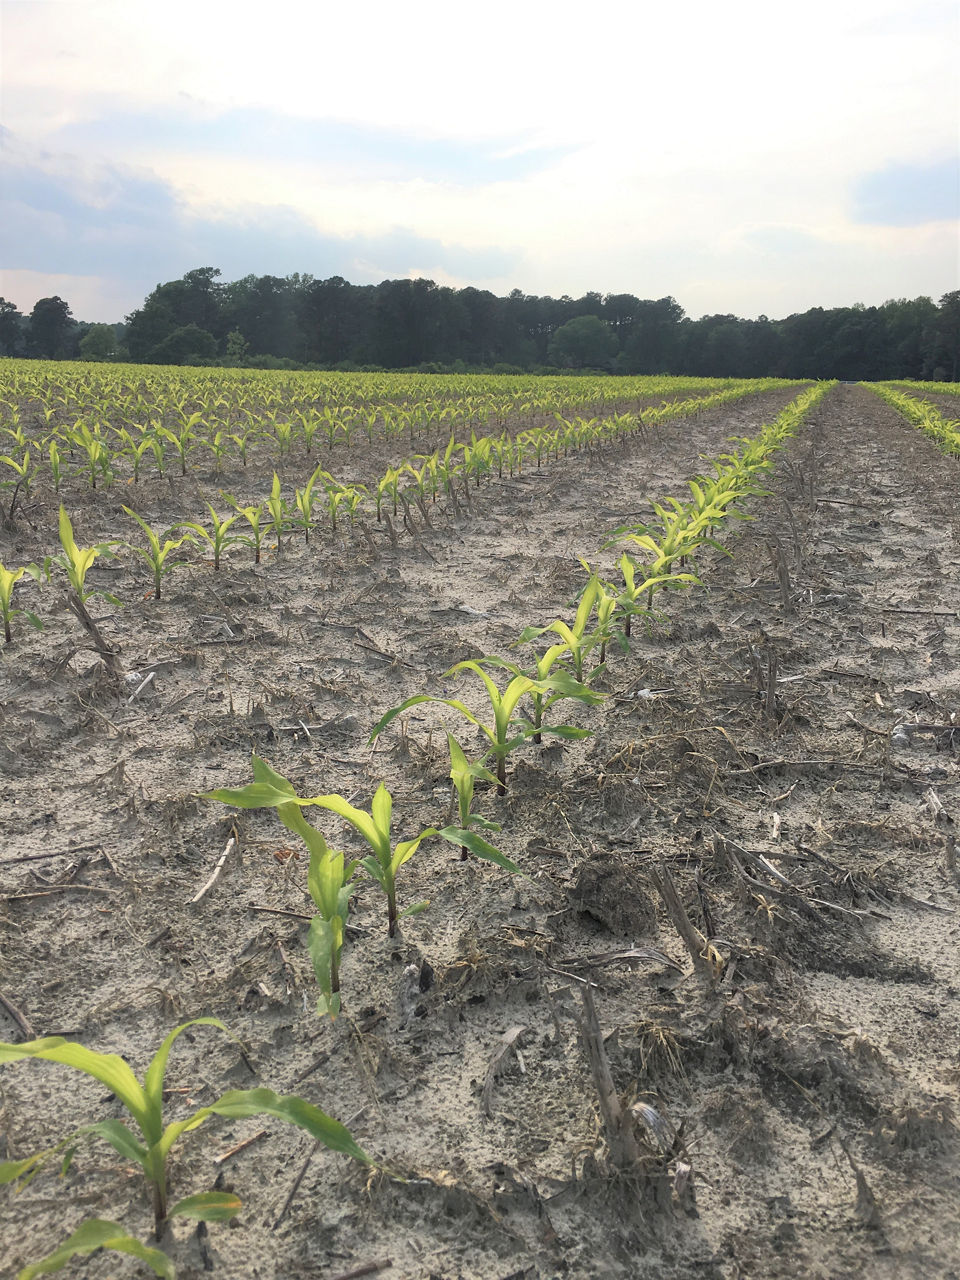 Early season sulfur deficiency symptoms in corn